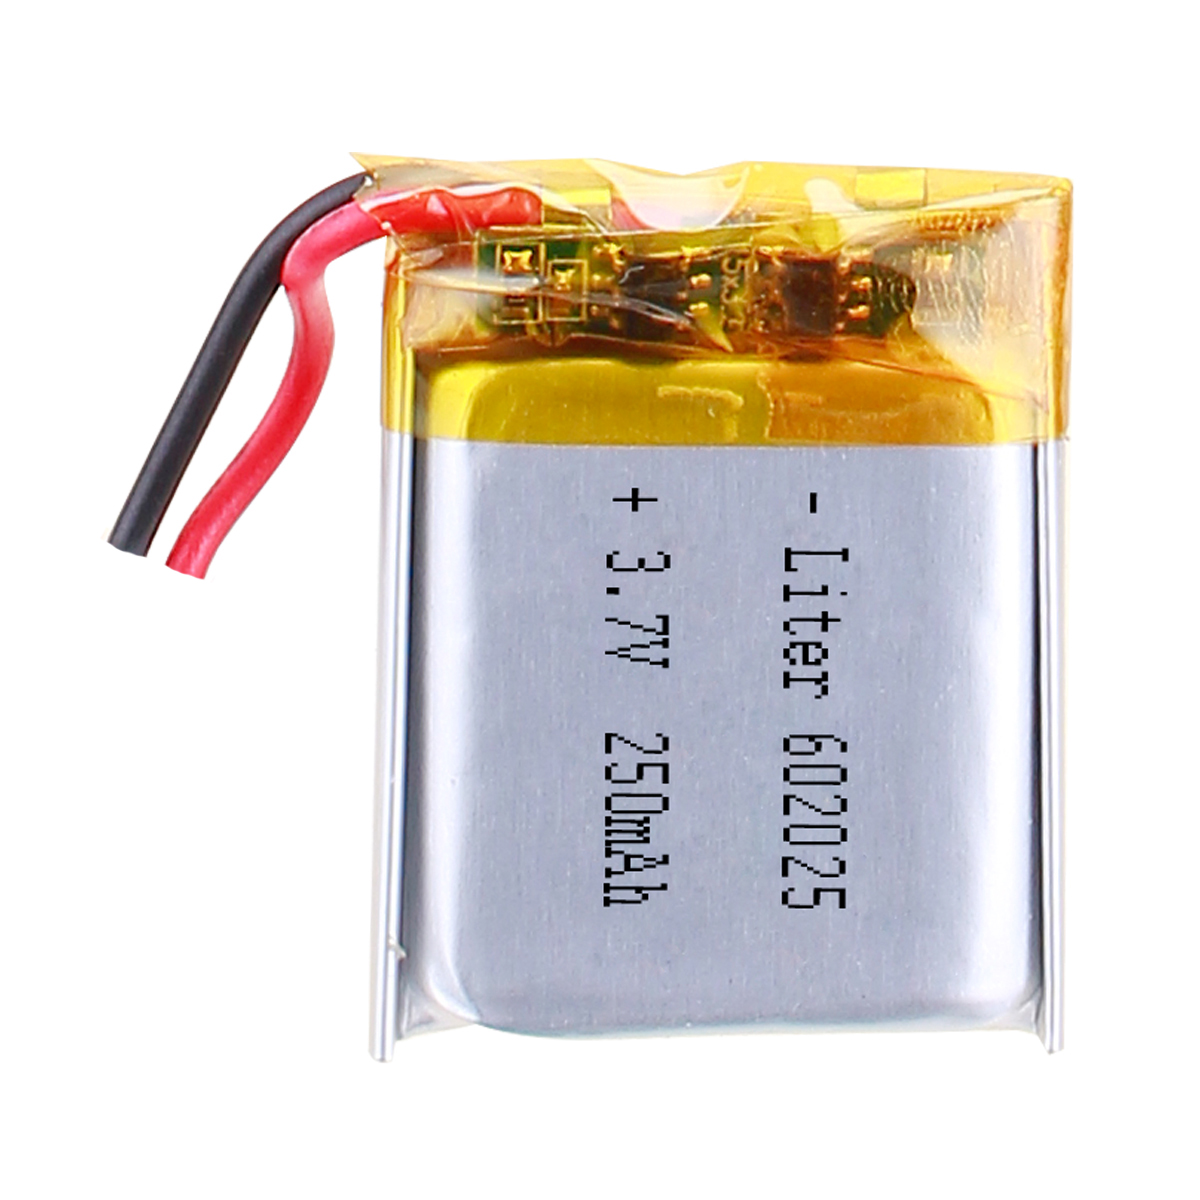 0.925Wh 3.7V LiPo Battery 250mAh LP602025